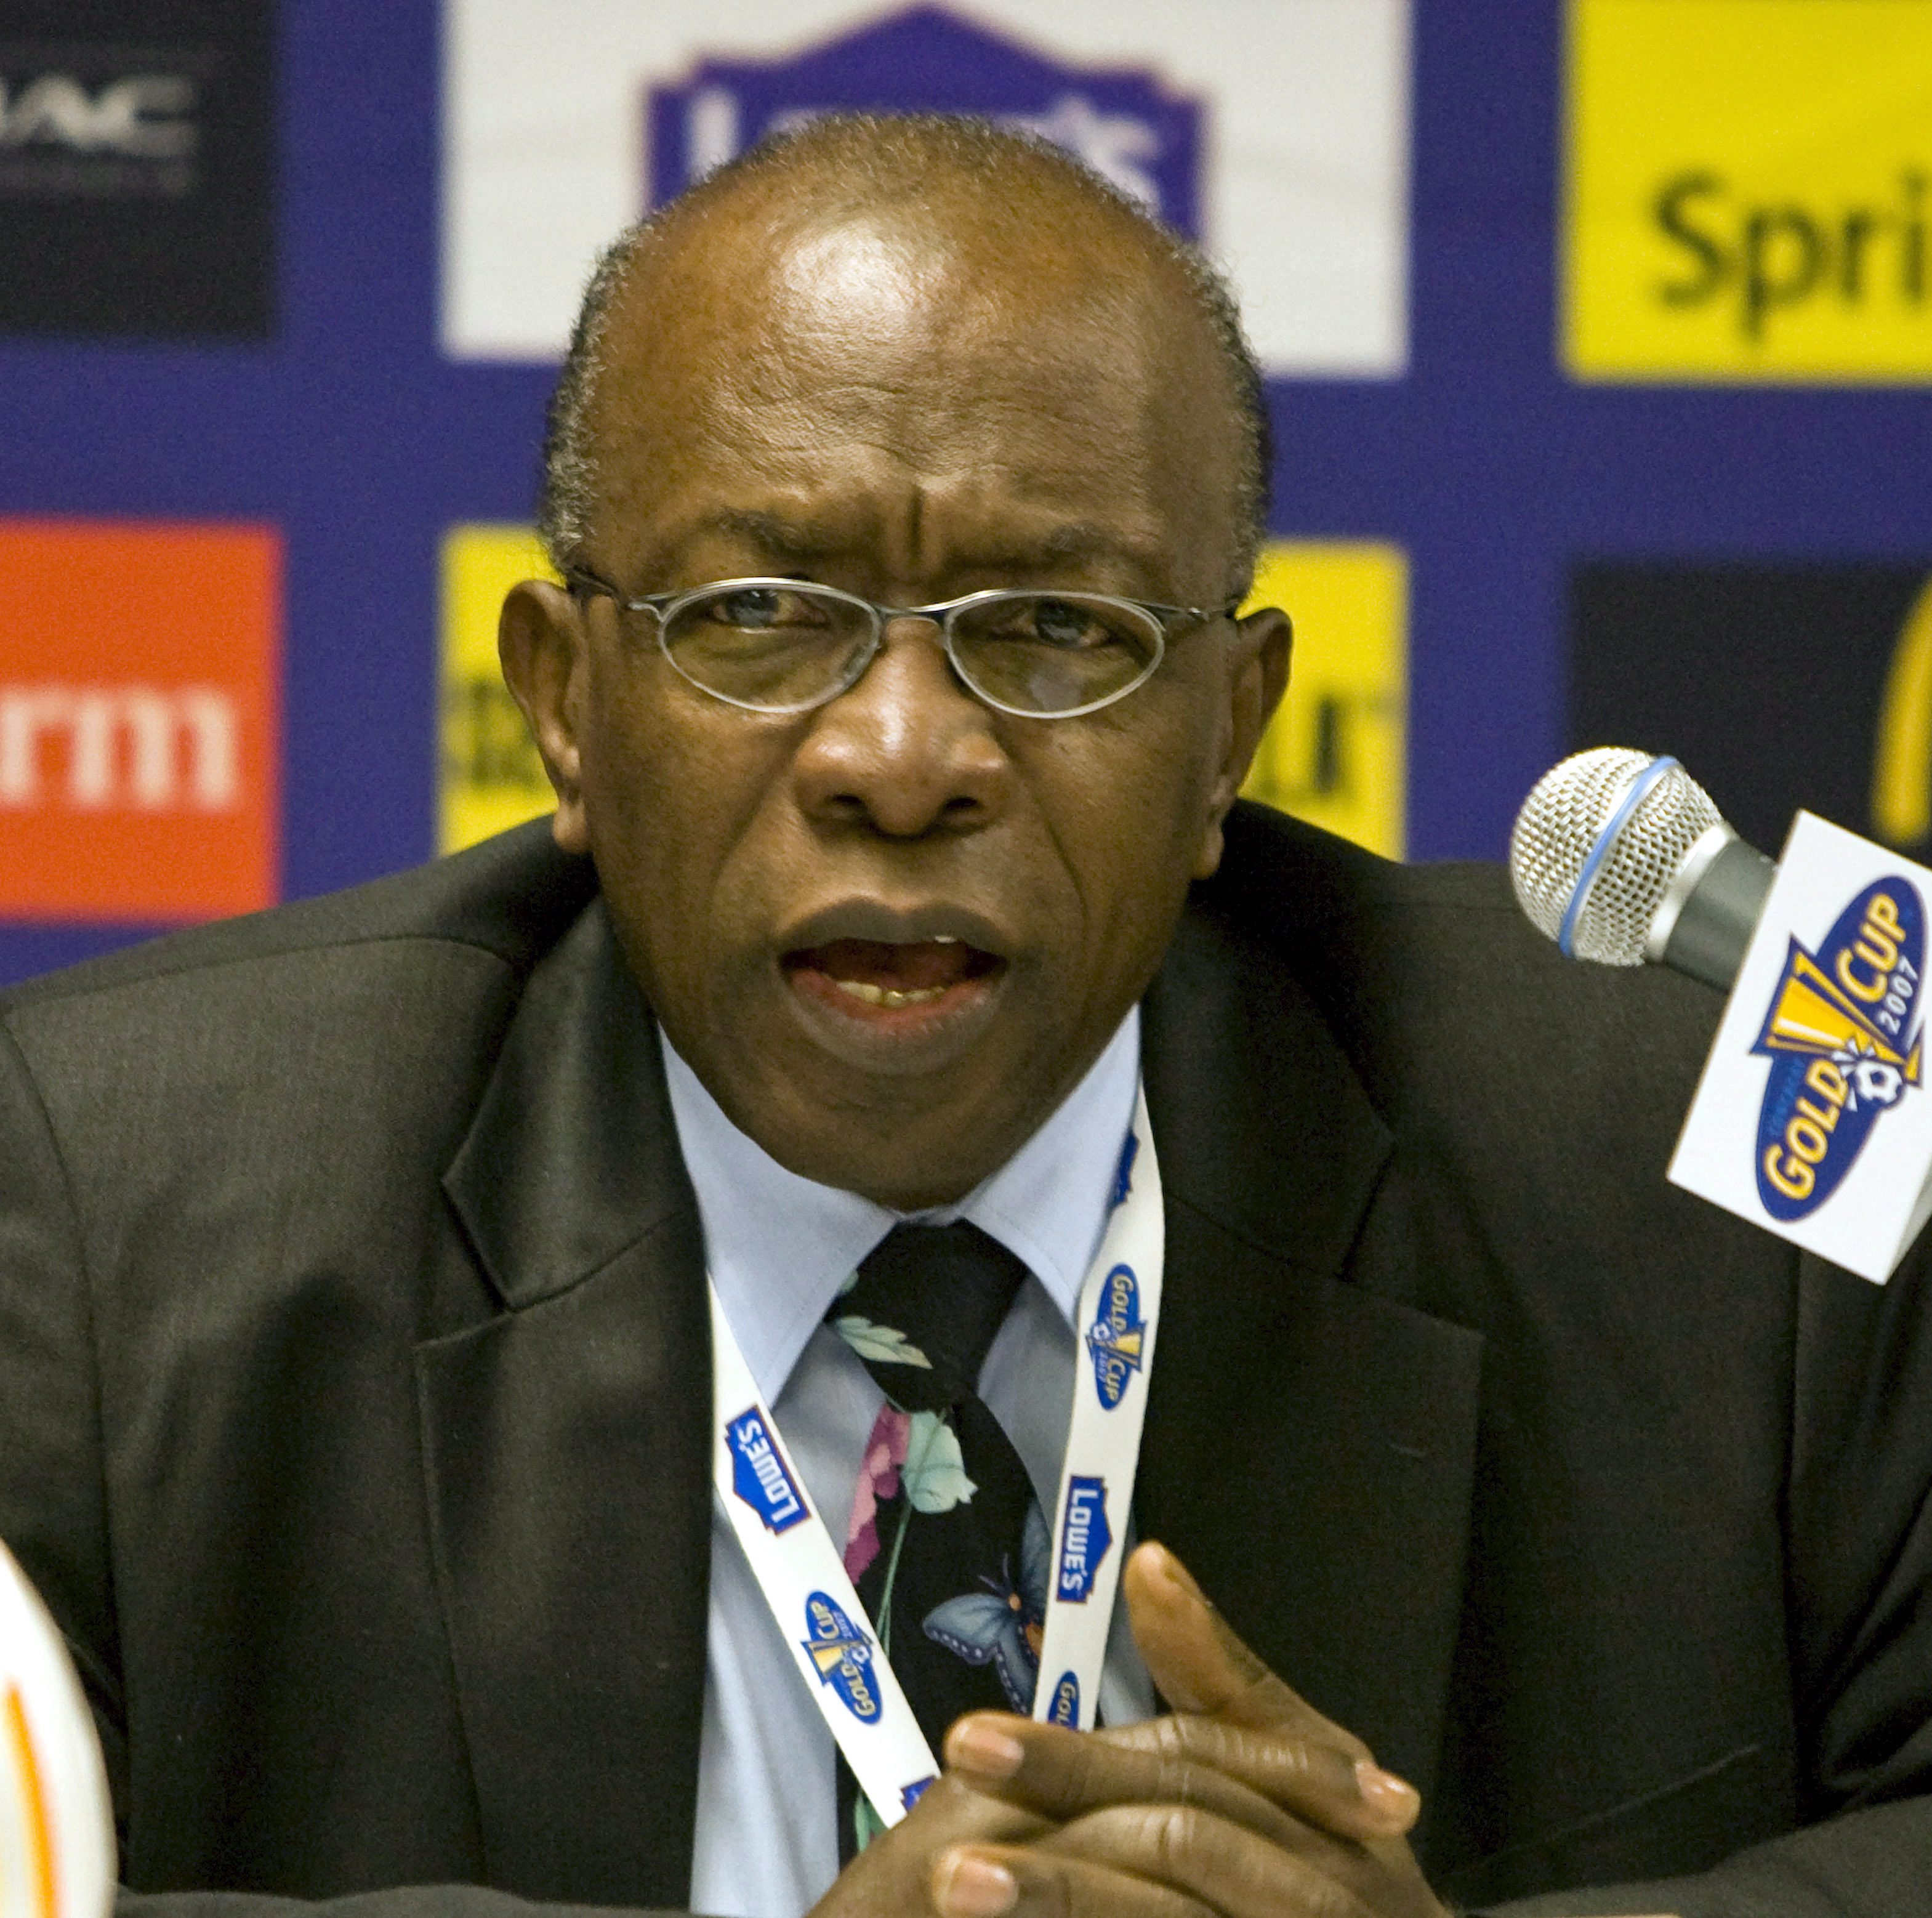 Вицепрезидентът на ФИФА подаде оставка